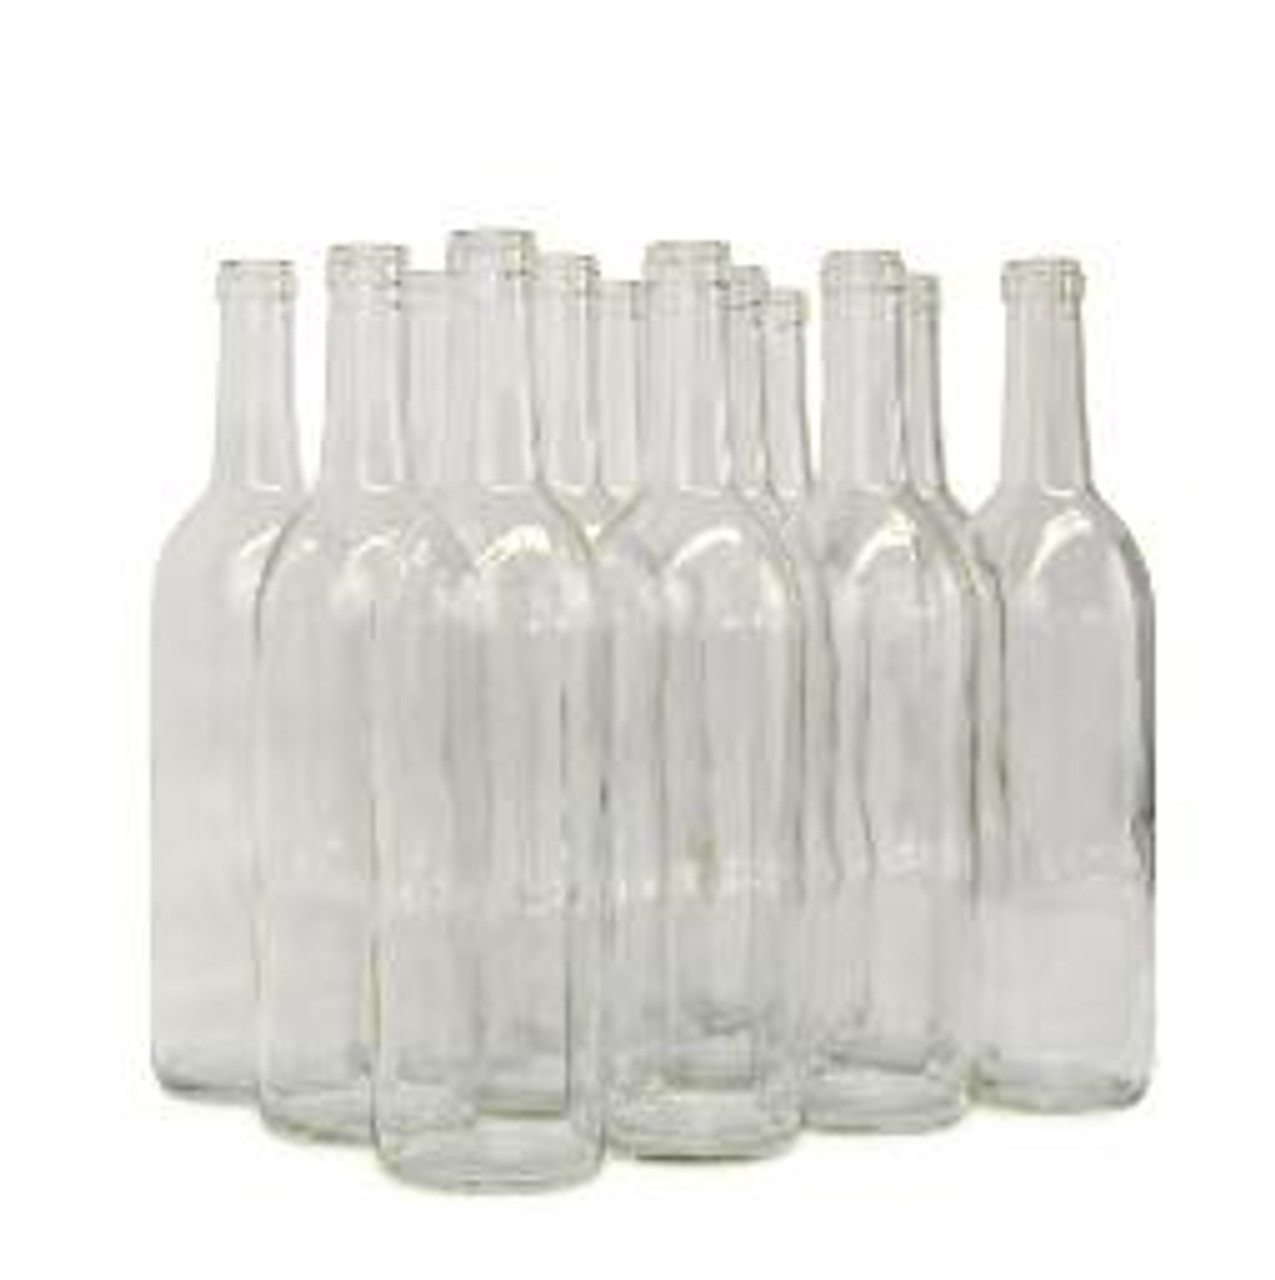 Claret/Bordeaux 750 ml Clear Wine Bottles, 12/case